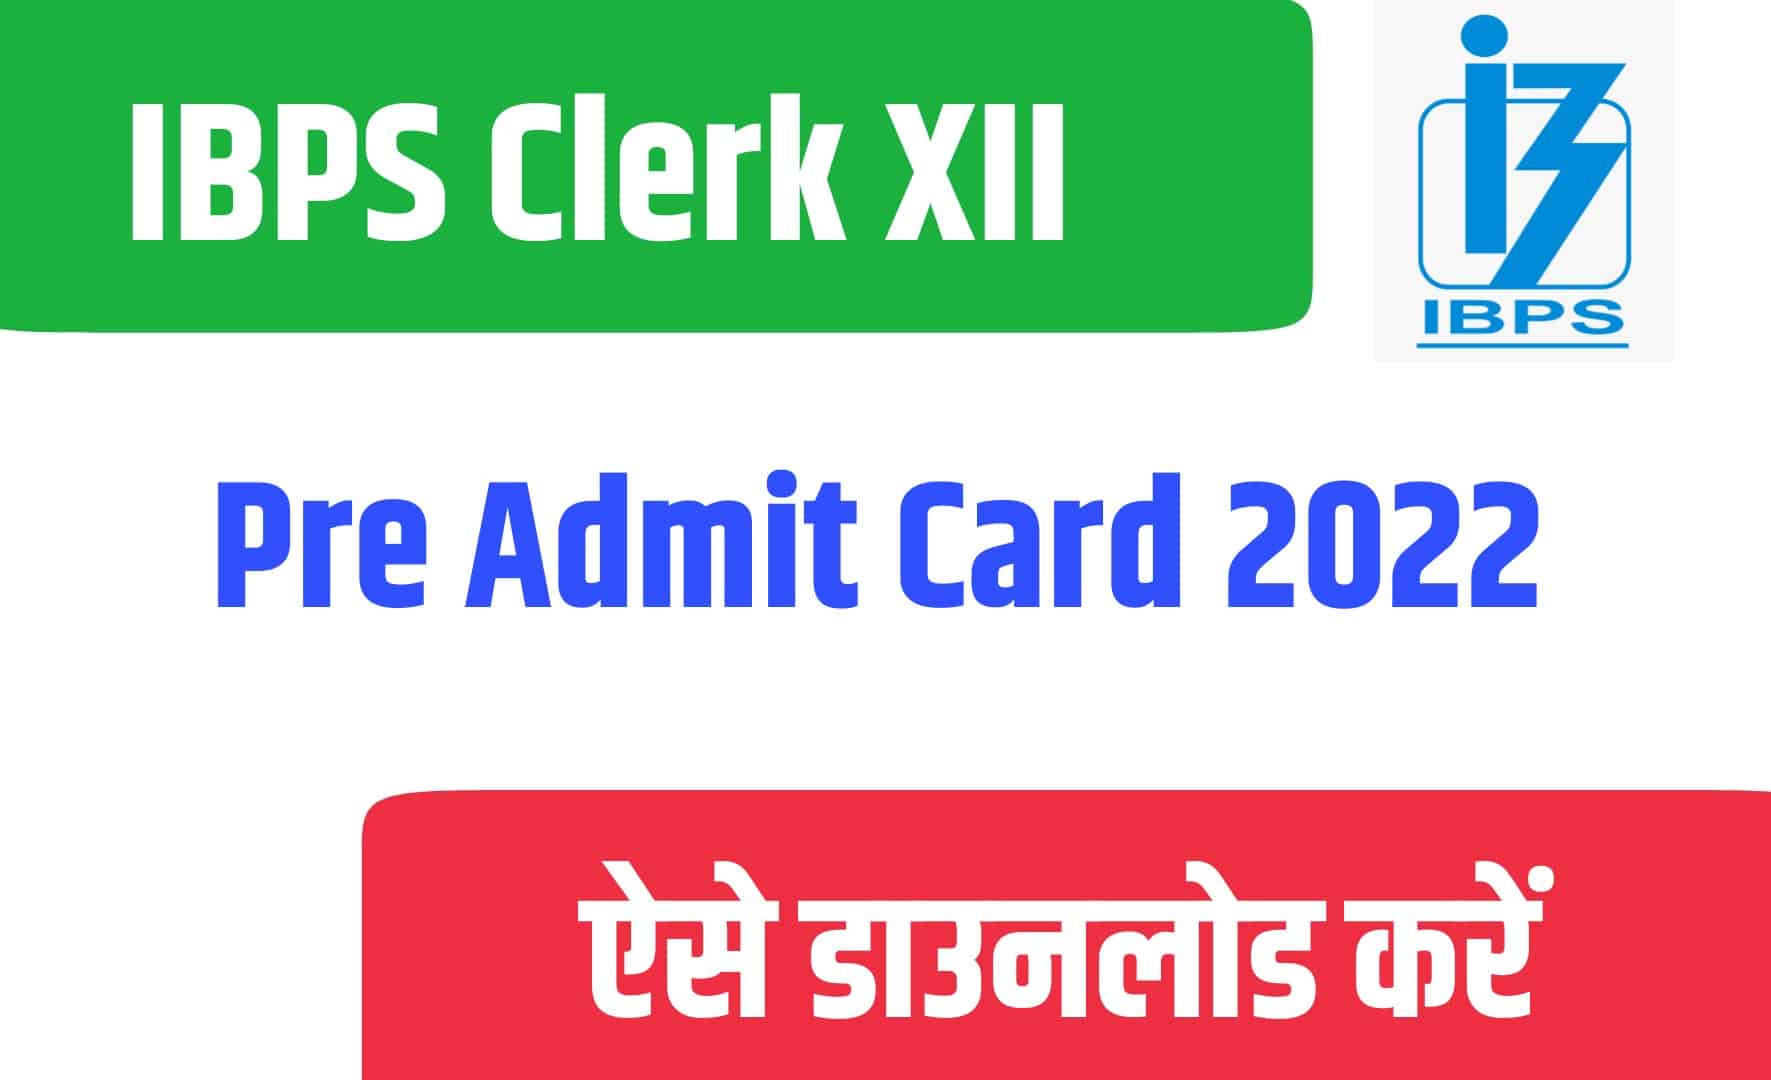 IBPS Clerk XII Pre Admit Card 2022